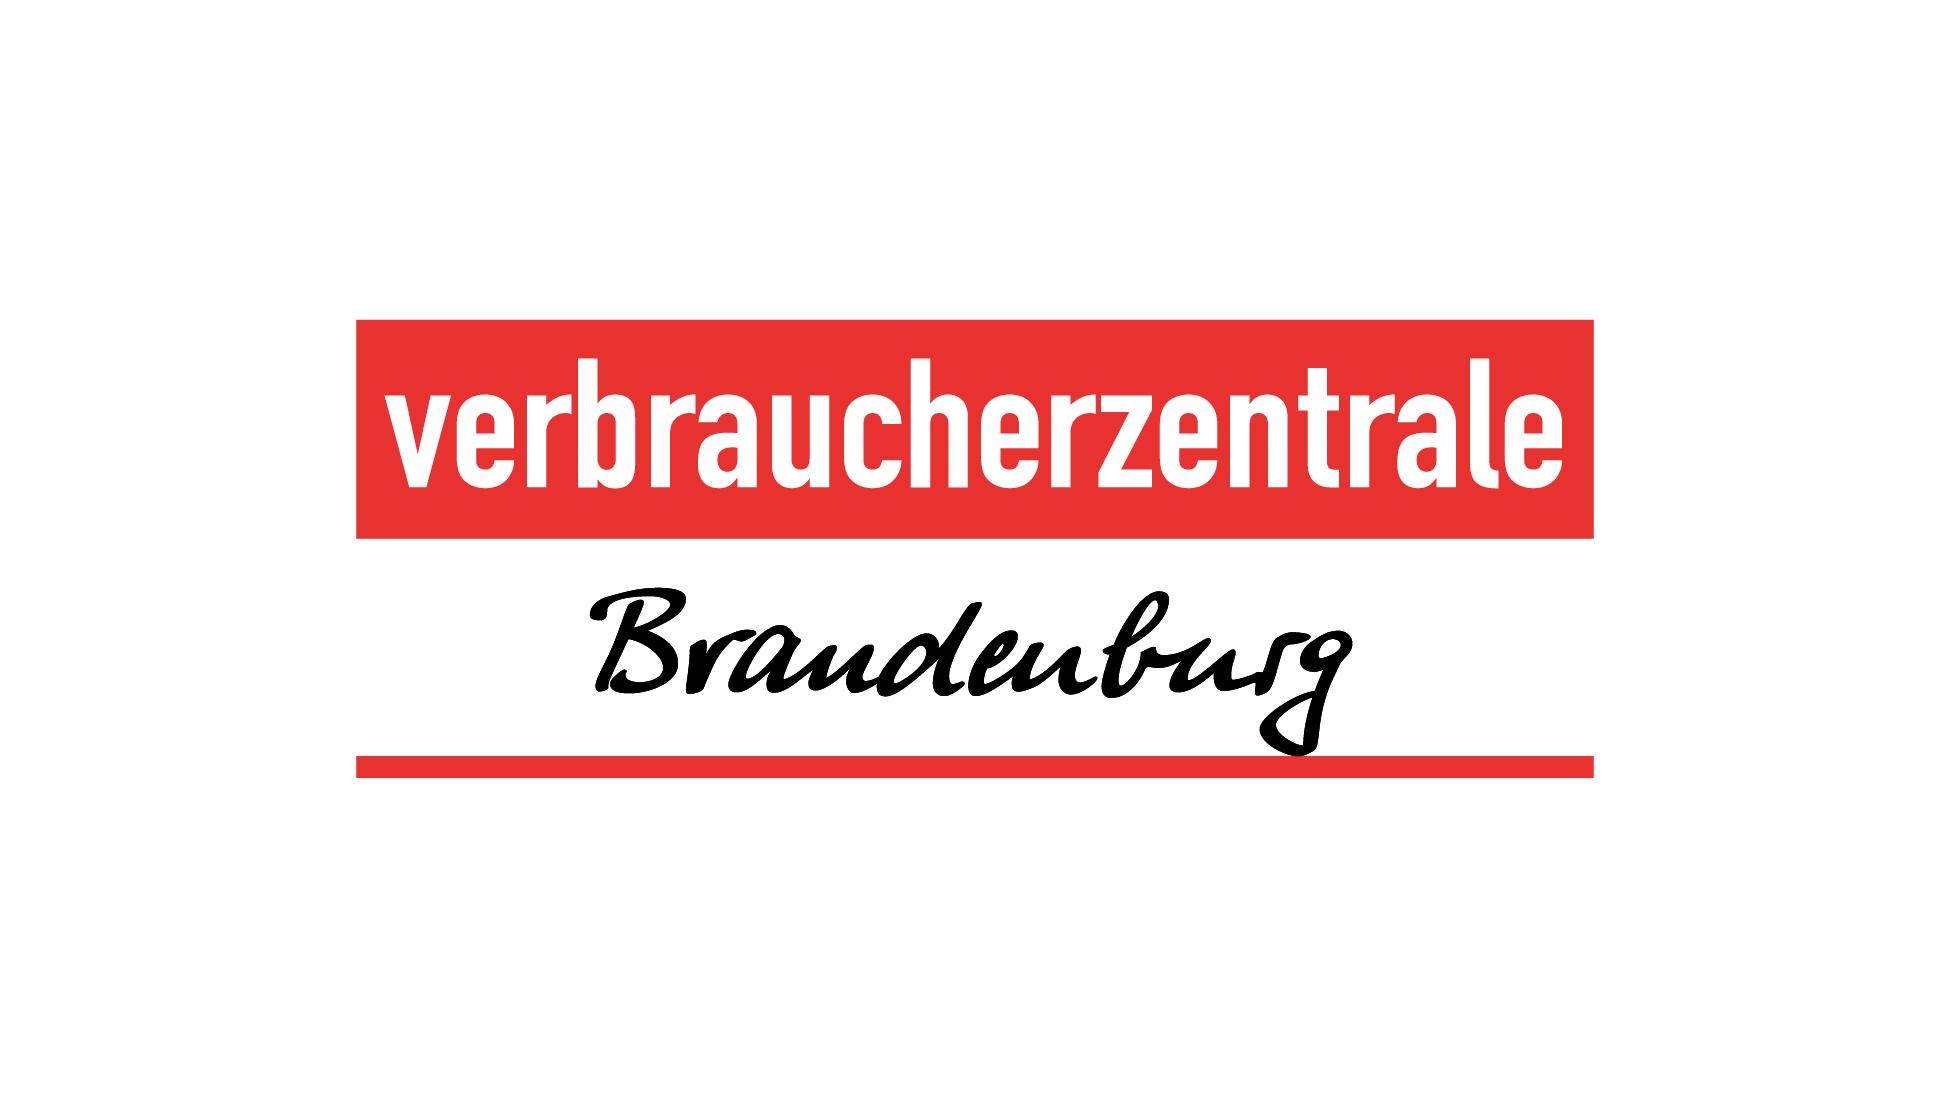 Verbraucherzentrale Brandenburg